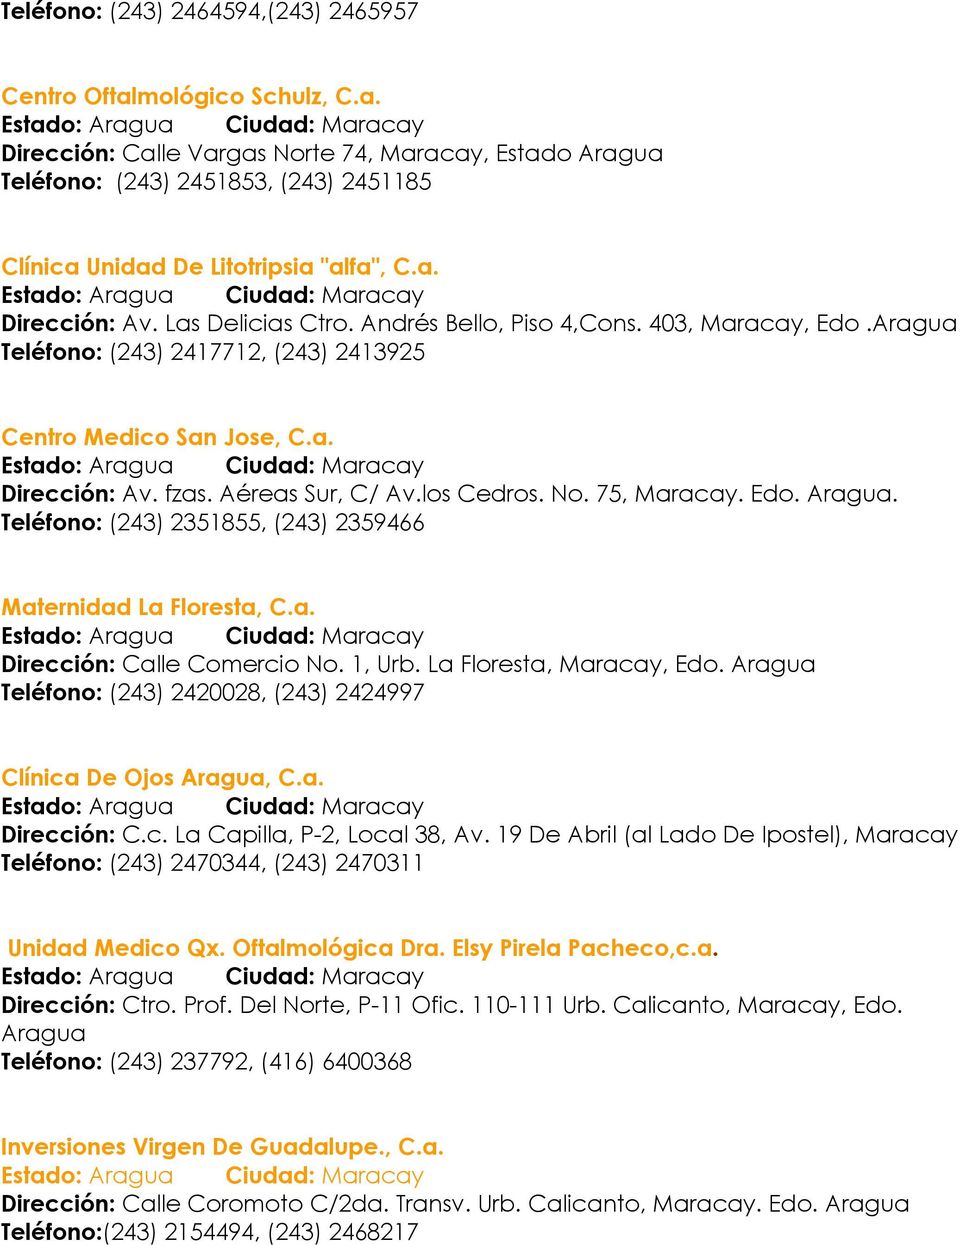 Las Delicias Ctro. Andrés Bello, Piso 4,Cons. 403, Maracay, Edo.Aragua Teléfono: (243) 2417712, (243) 2413925 Centro Medico San Jose, C.a. Estado: Aragua Ciudad: Maracay Dirección: Av. fzas.